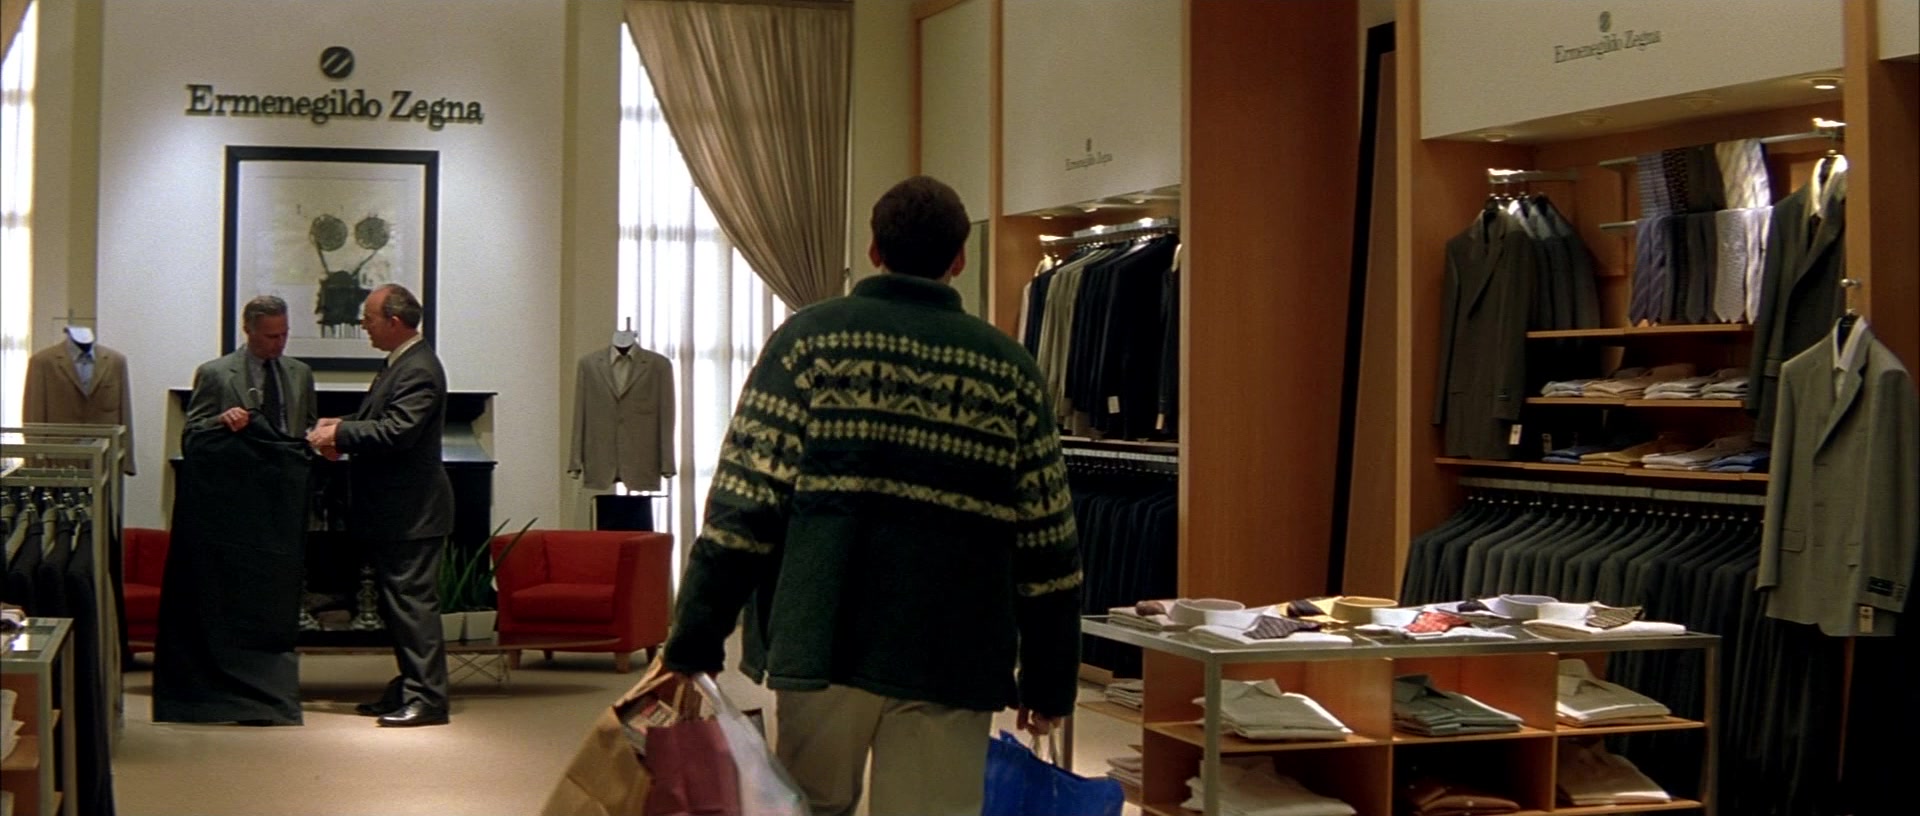 Ermenegildo Zegna Men's Clothing Store In The Family Man (2000)